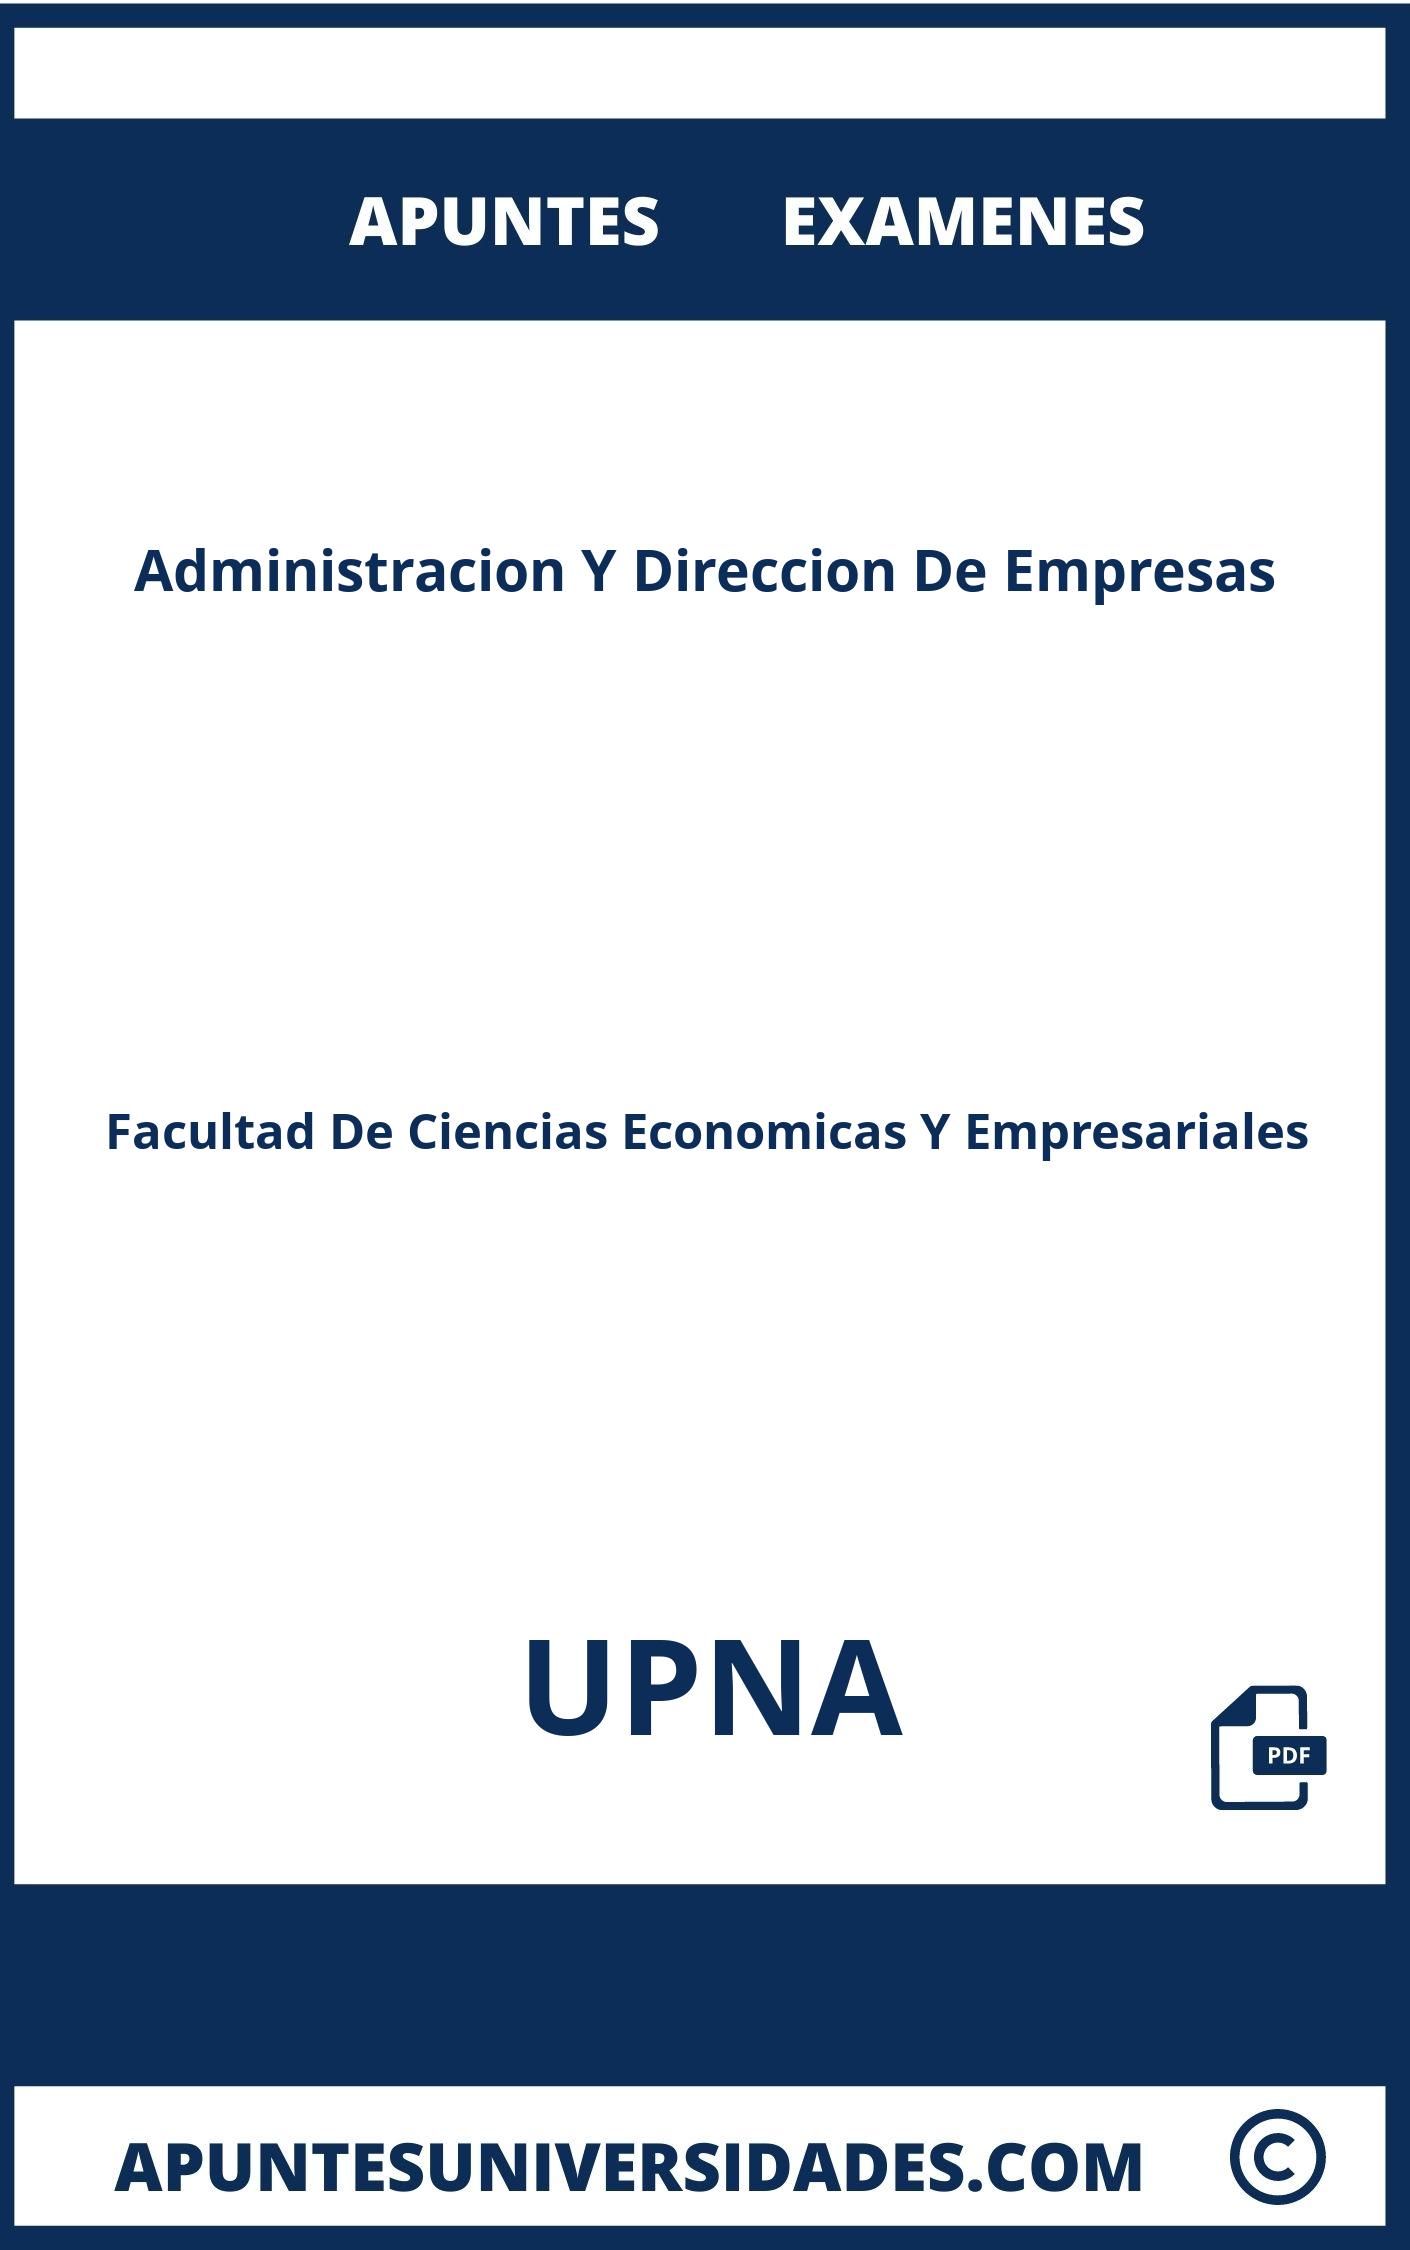 Examenes y Apuntes de Administracion Y Direccion De Empresas UPNA